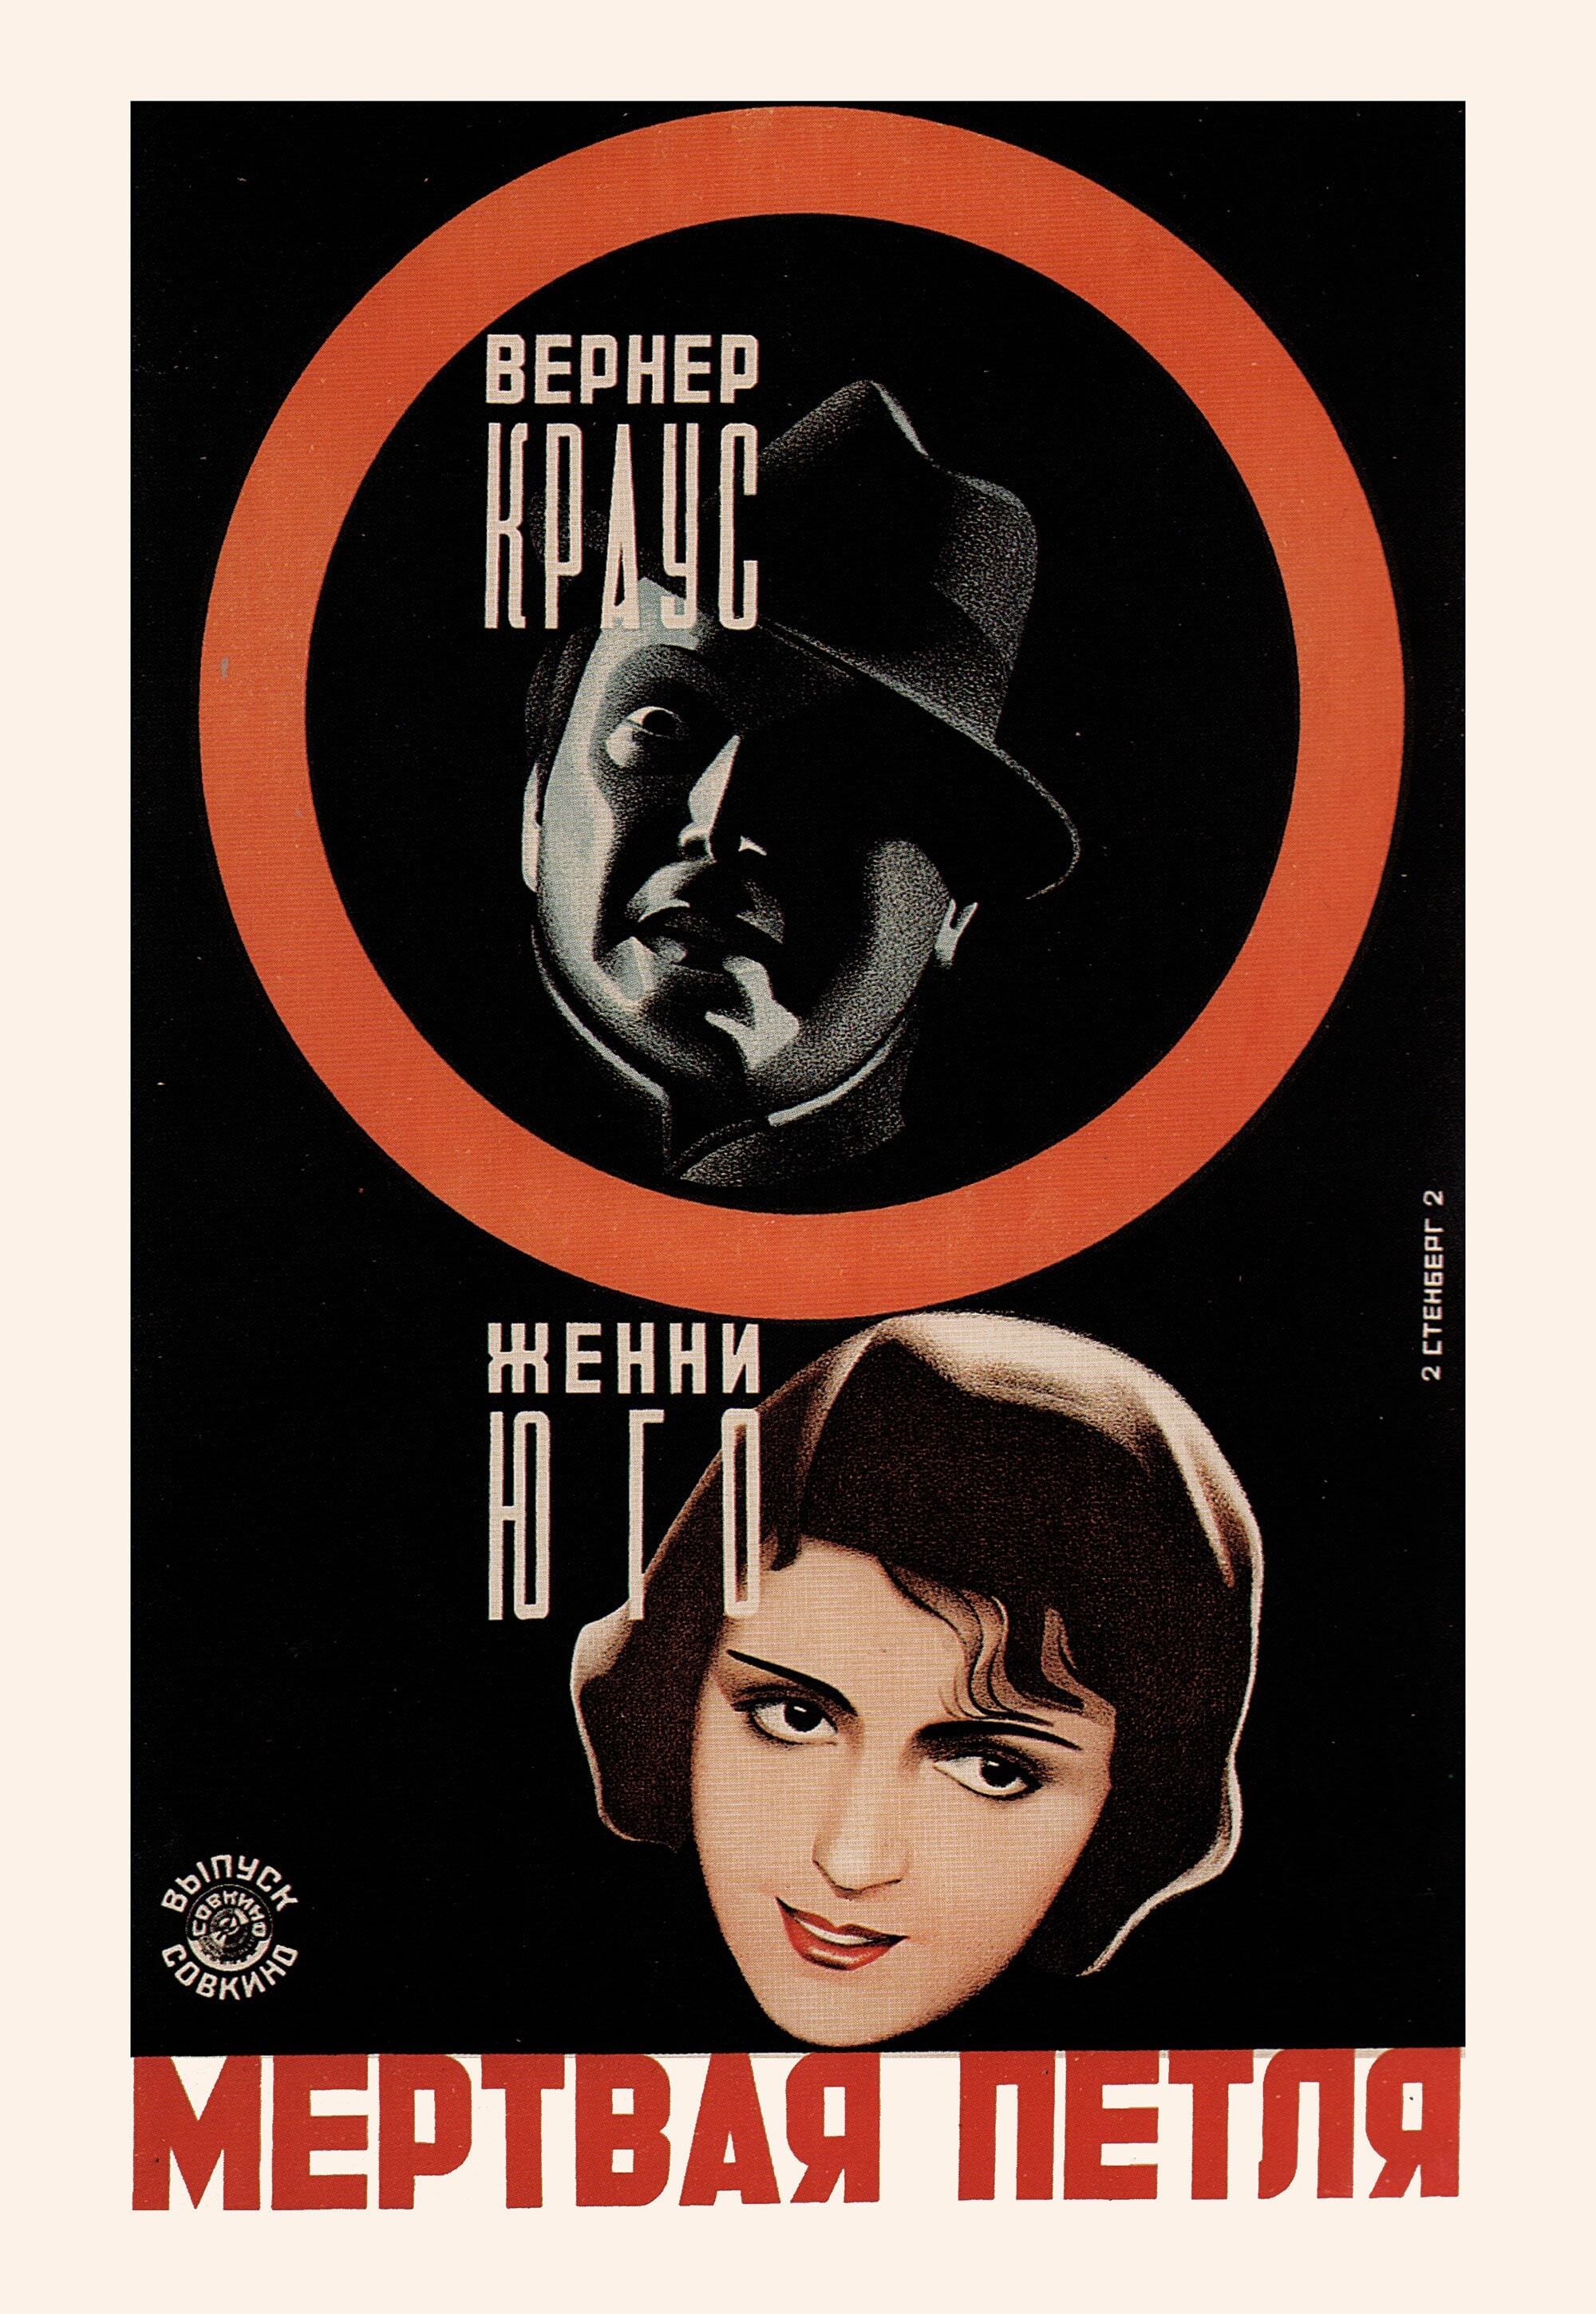 Мертвая петля, 1928 год, режиссёр Артур Робинсон, плакат к фильму, авторы Владимир и Георгий Стенберги (авангардное советское искусство, 1920-е)